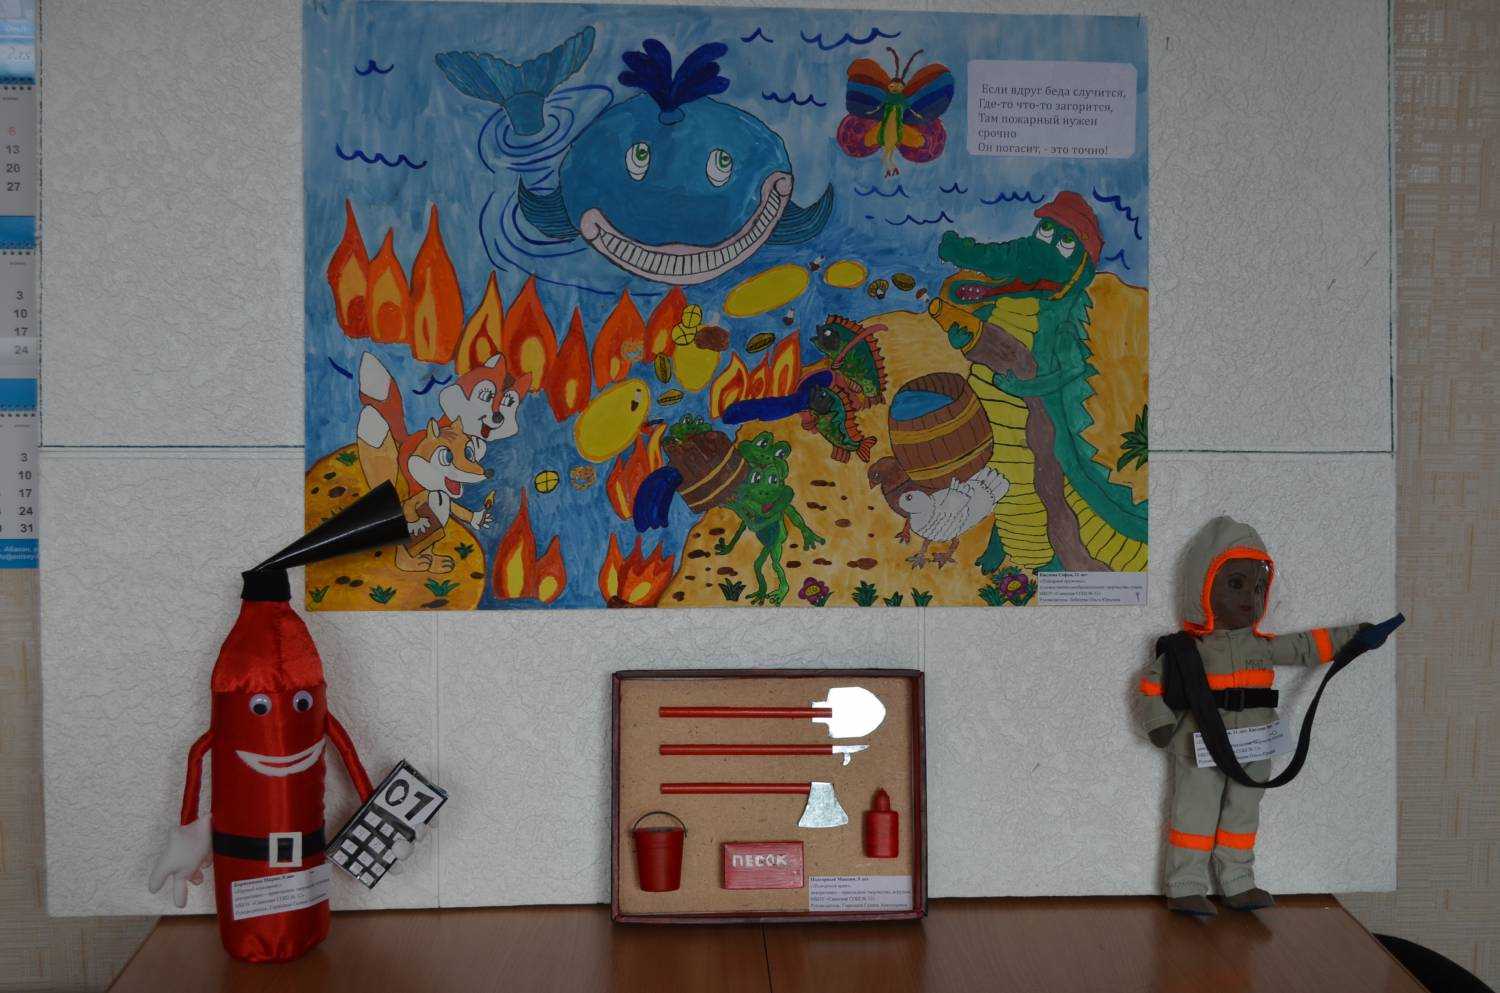 Детские поделки на тему пожарной безопасности в детский сад, школу своими руками: фото. как сделать поделку по пожарной безопасности глазами детей на конкурс неопалимая купина?